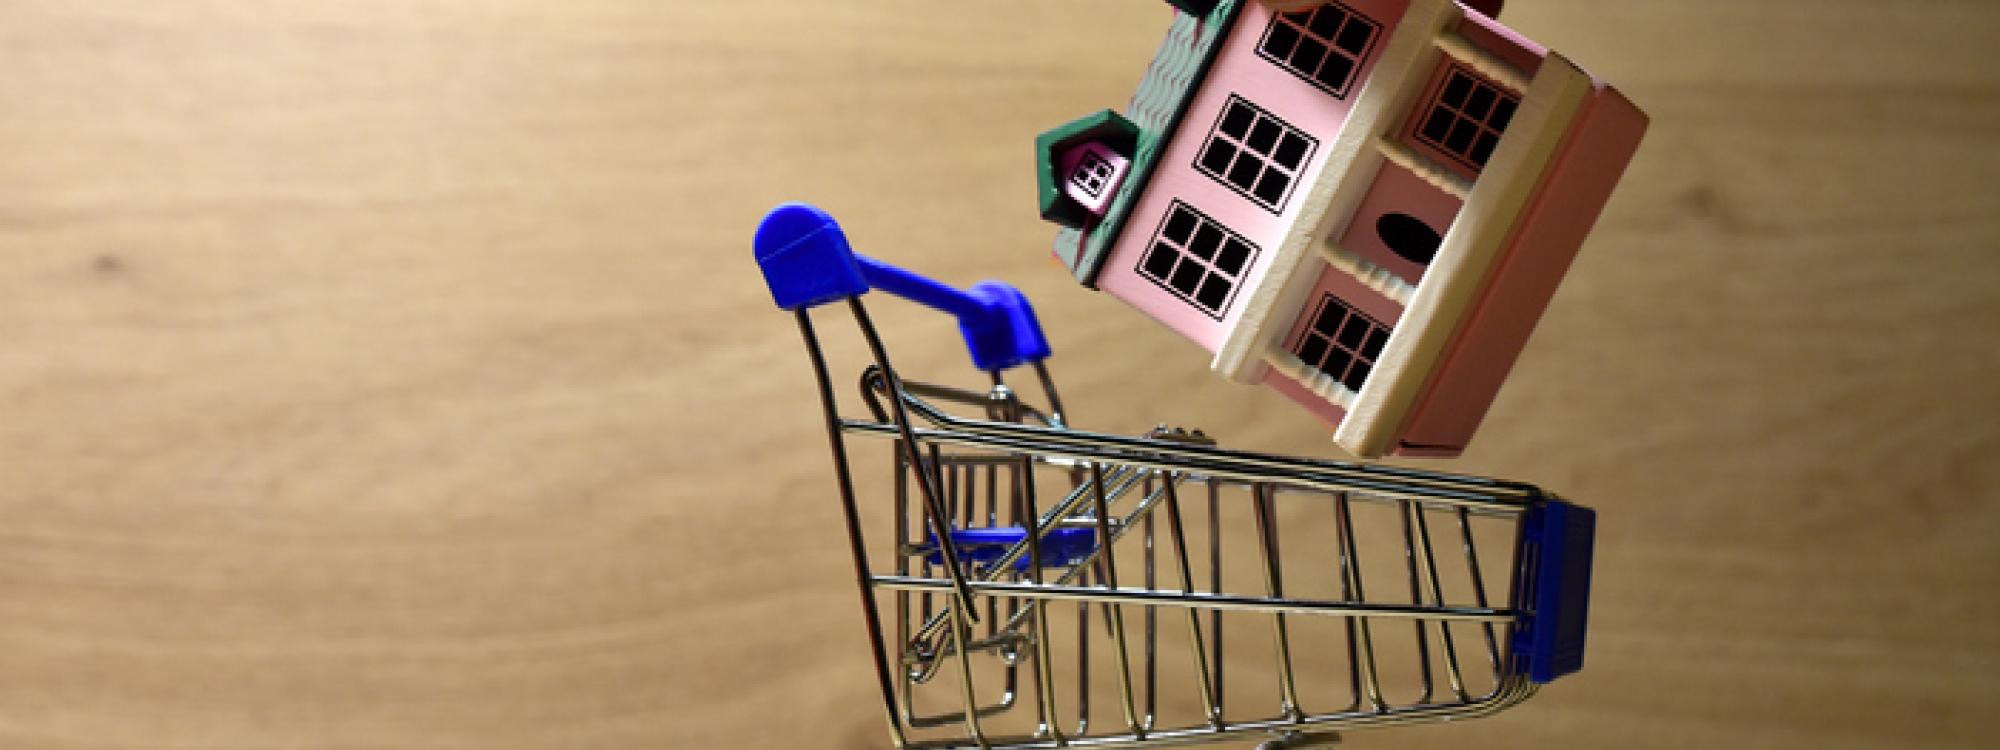 Ceny nemovitostí v Česku rostou, rodinné domy meziročně zdražily o pětinu